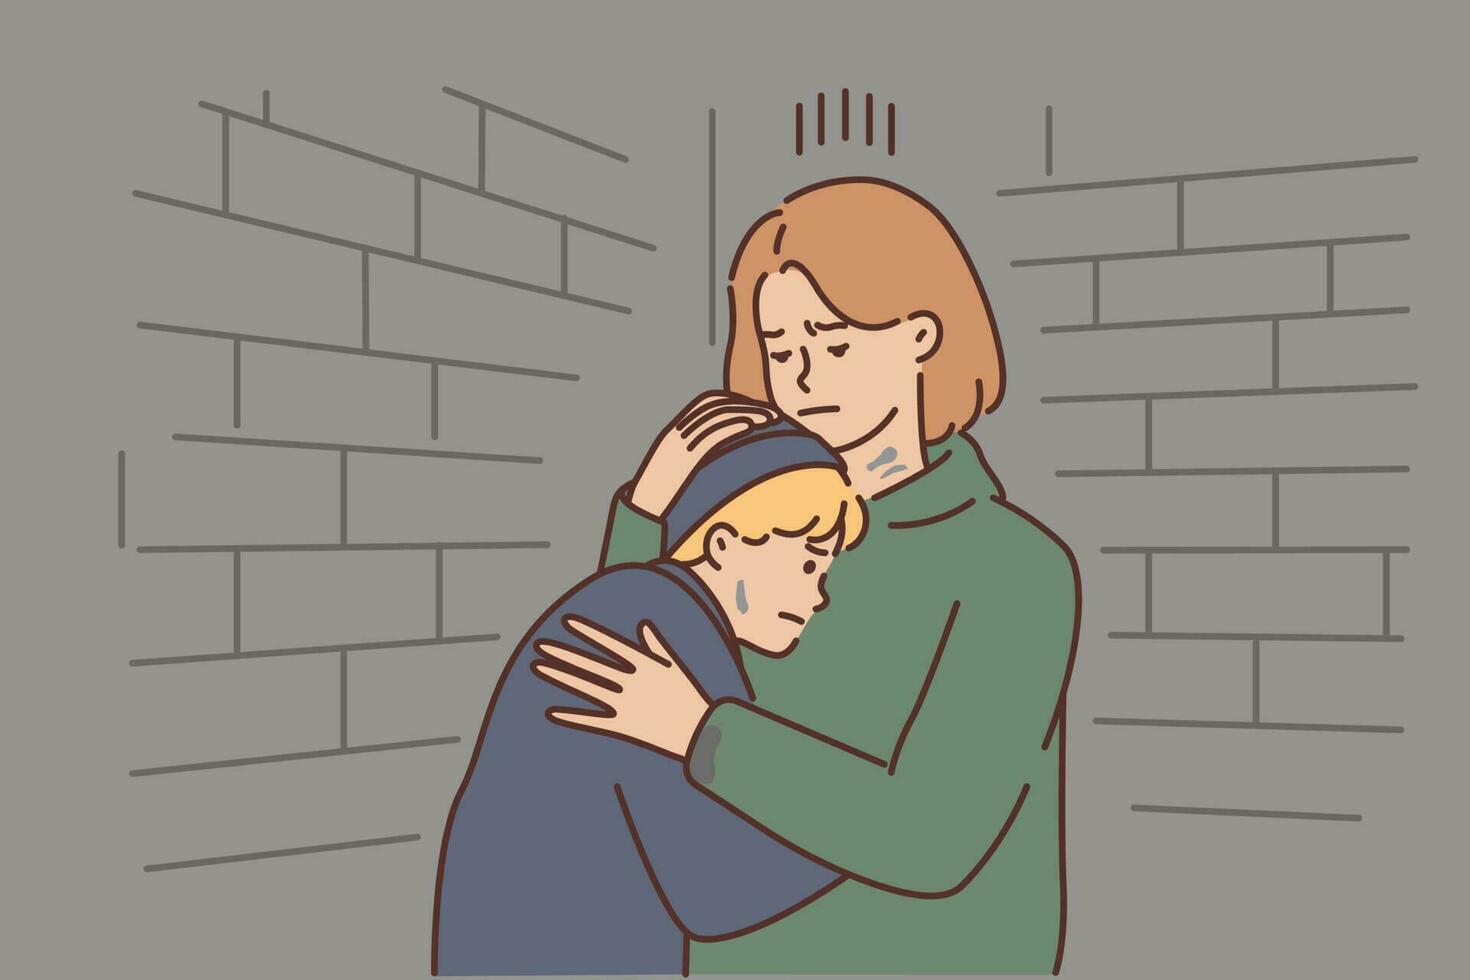 infeliz madre abrazo llorando niño ocultación en cava. estresado trastornado mamá y ansioso pobre niño encontrar abrigo en abandonado sótano. vector ilustración.